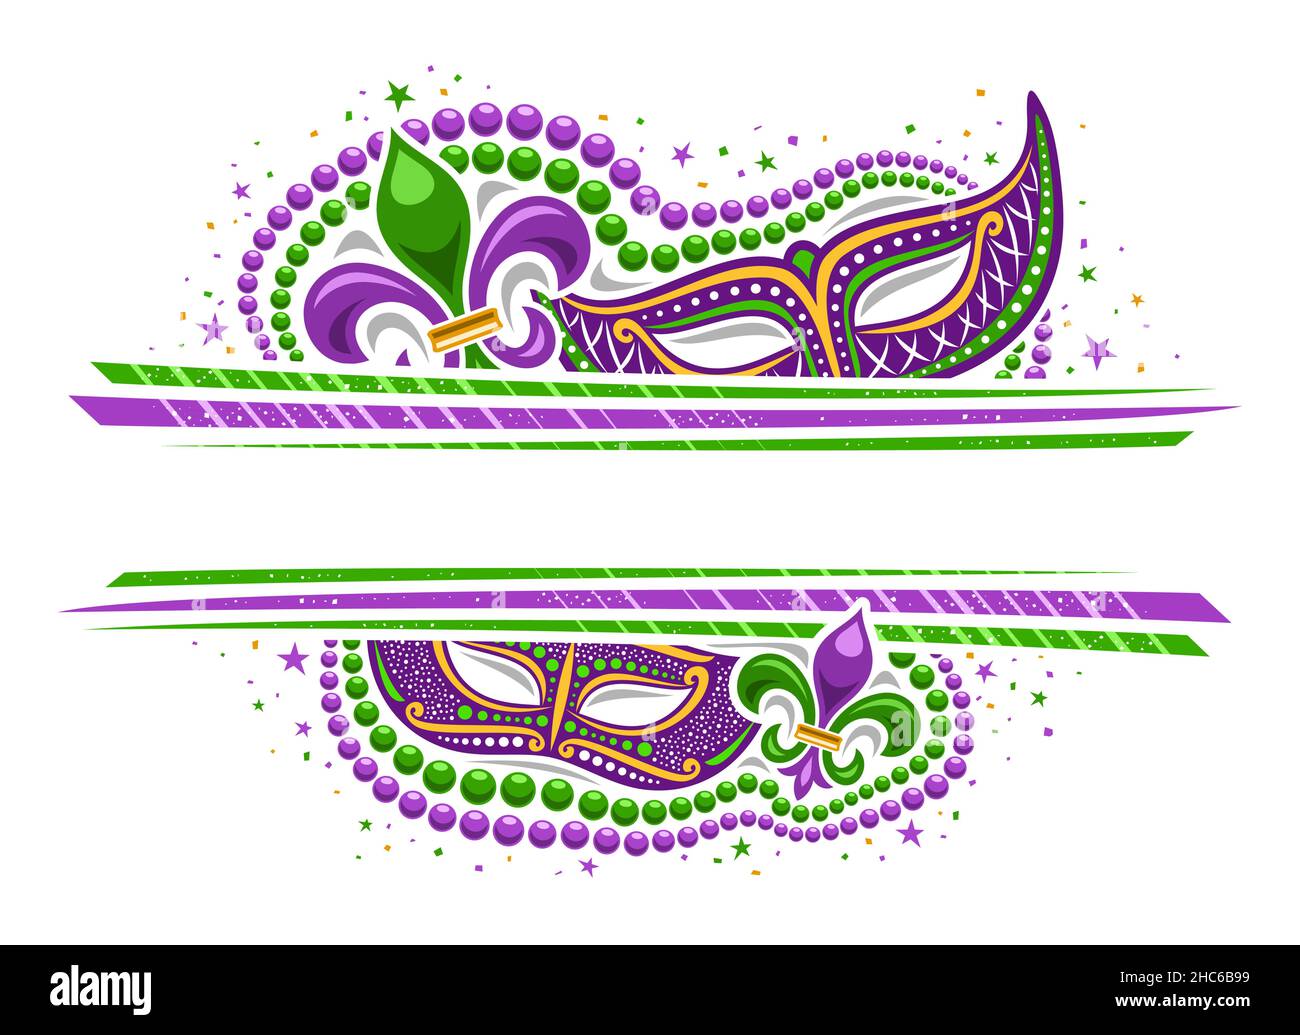 Vector Mardi gras Border avec copyspace, modèle horizontal avec illustration des symboles mardi gras violets, étoiles colorées et rayures décoratives pour Illustration de Vecteur